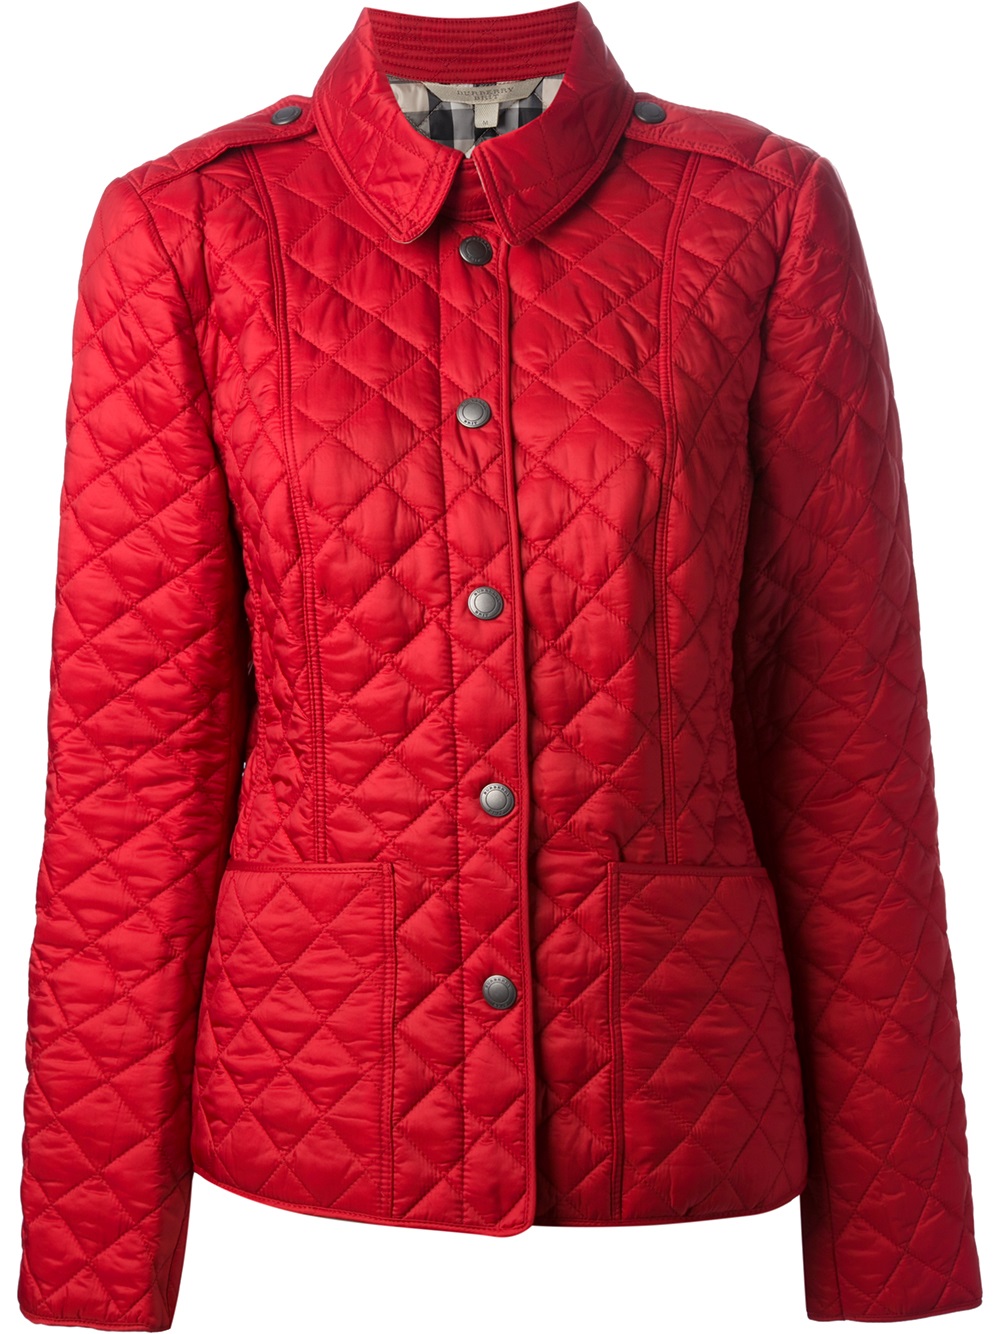 Actualizar 79+ imagen red burberry jacket